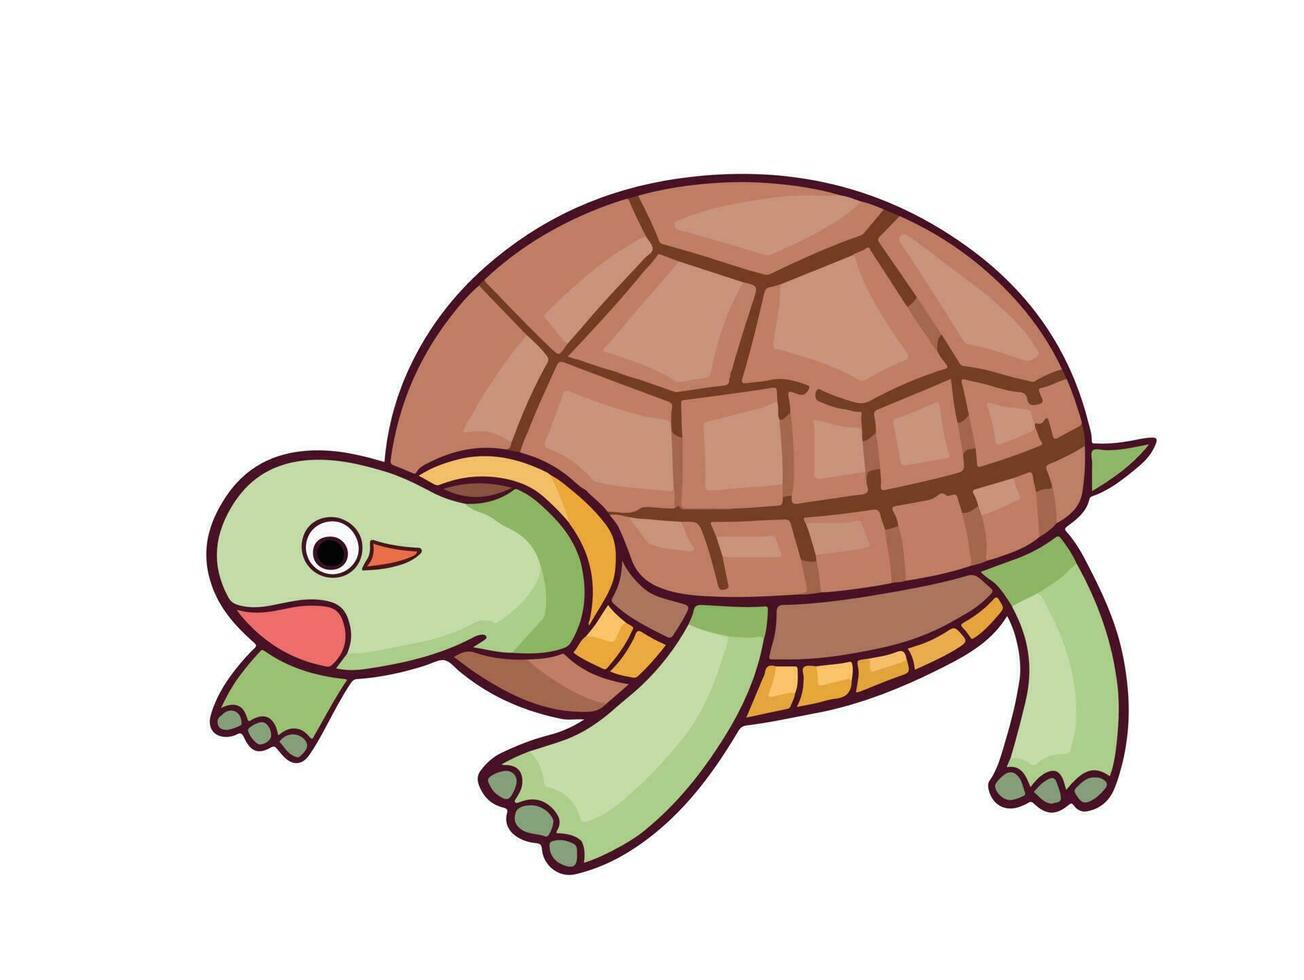 grön sköldpadda med brun skal djur- vektor illustration isolerat på horisontell vit bakgrund. enkel platt skisse teckning av hav djur.